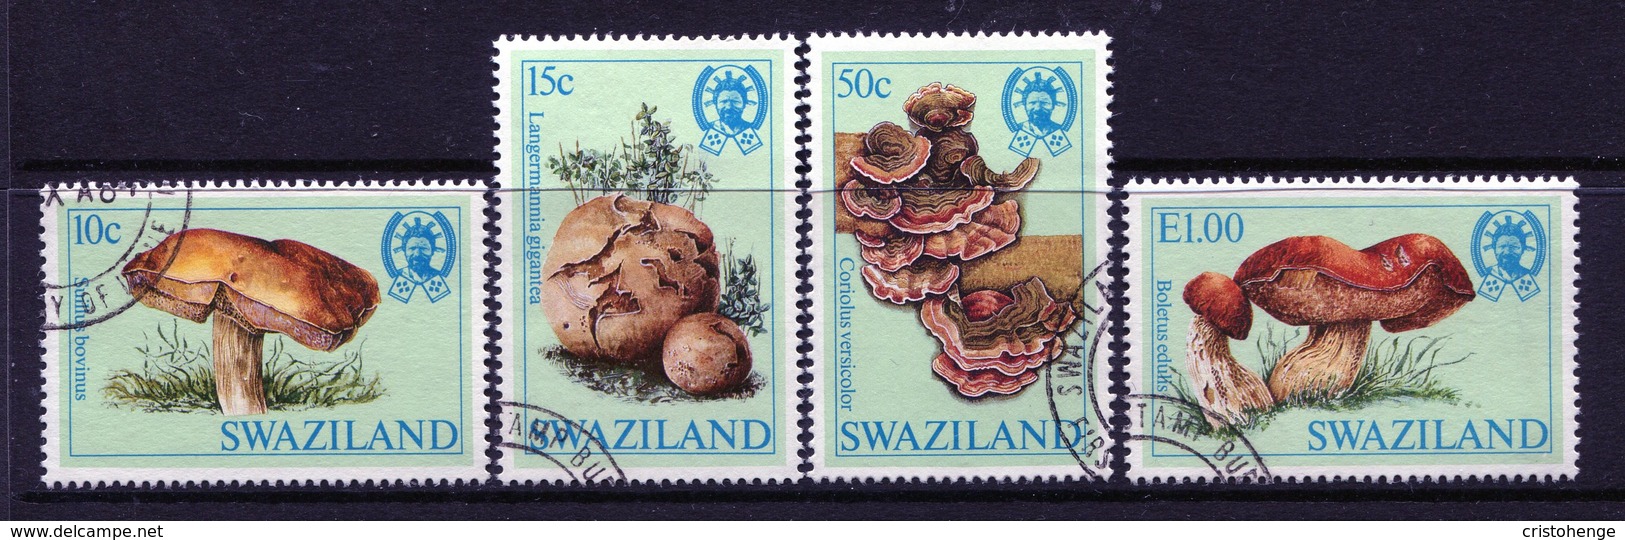 Swaziland 1984 Fungi Set Used (SG 462-465) - Swaziland (1968-...)